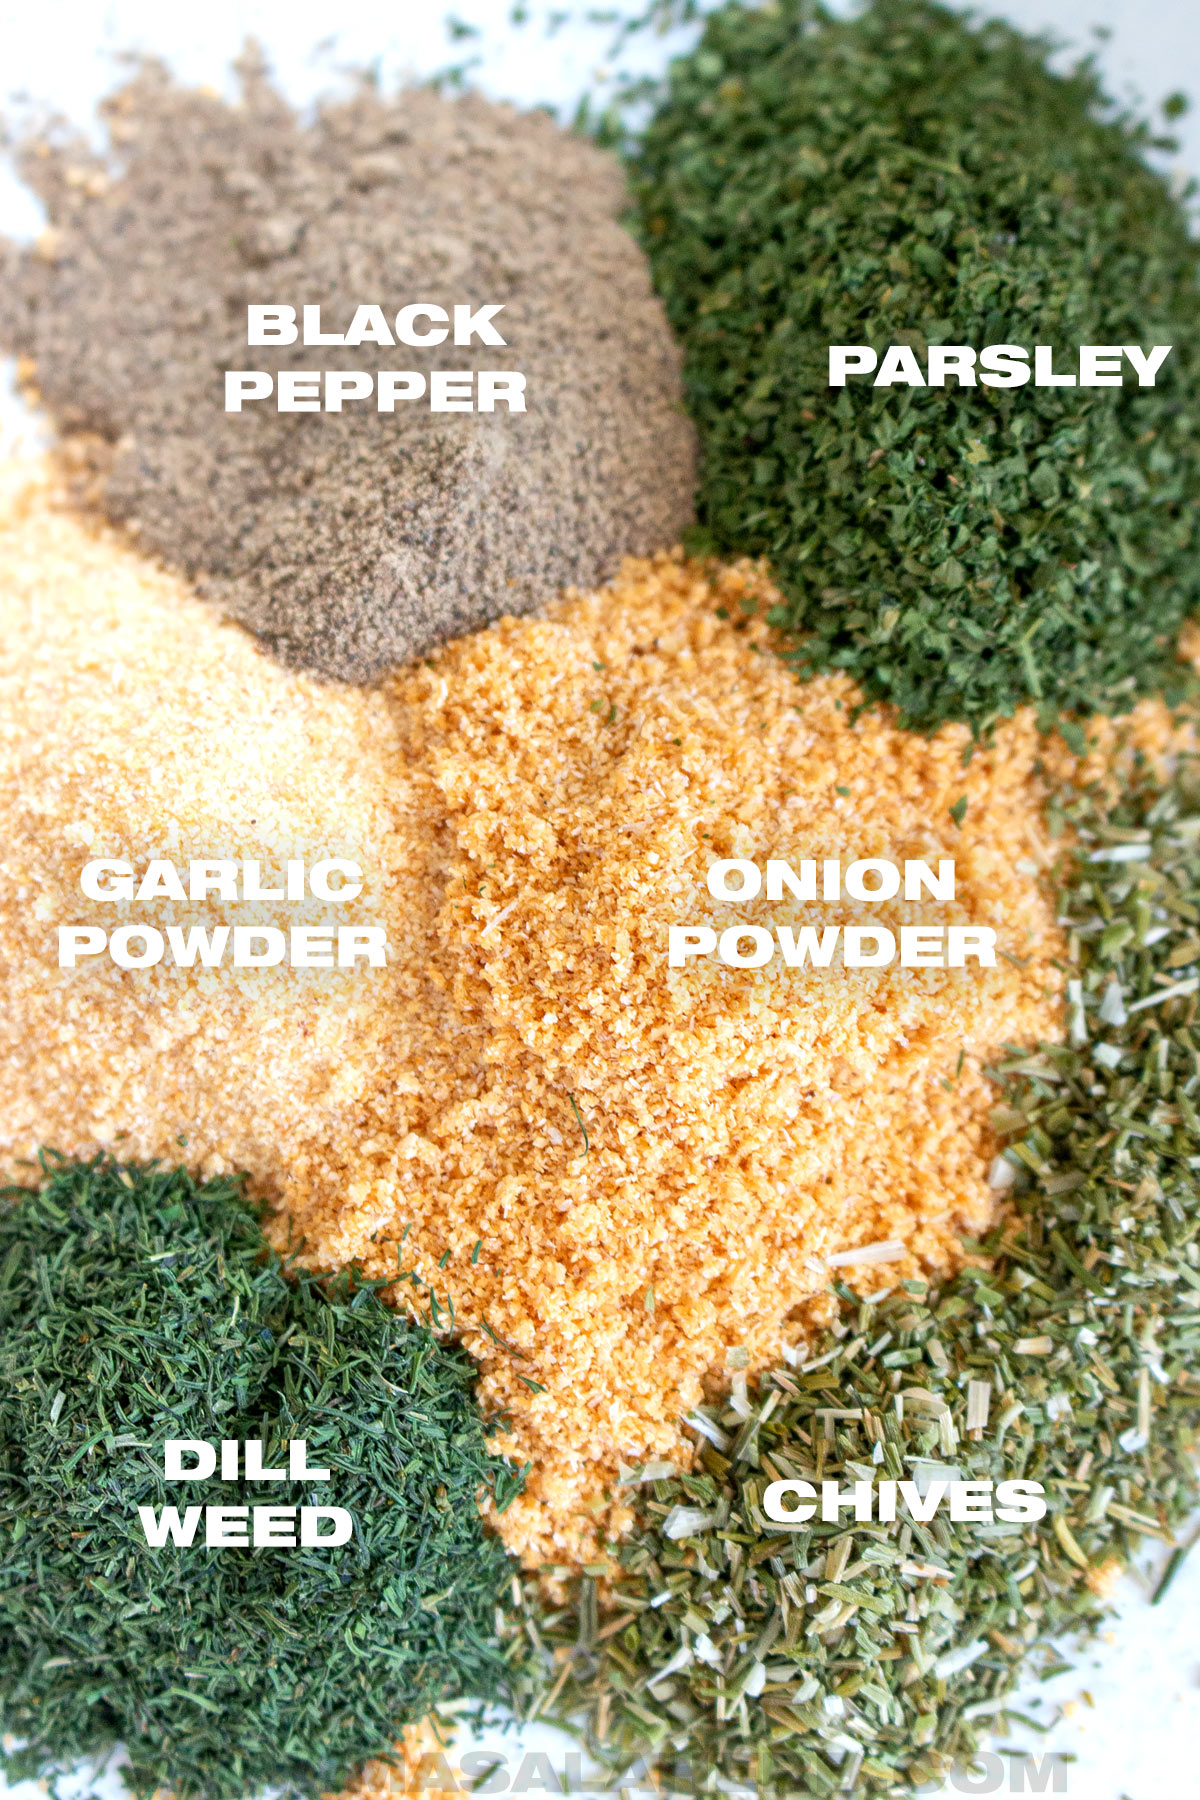 black pepper powder, dried parsley, garlic powder, onion powder, dill weed dried, chives dried.